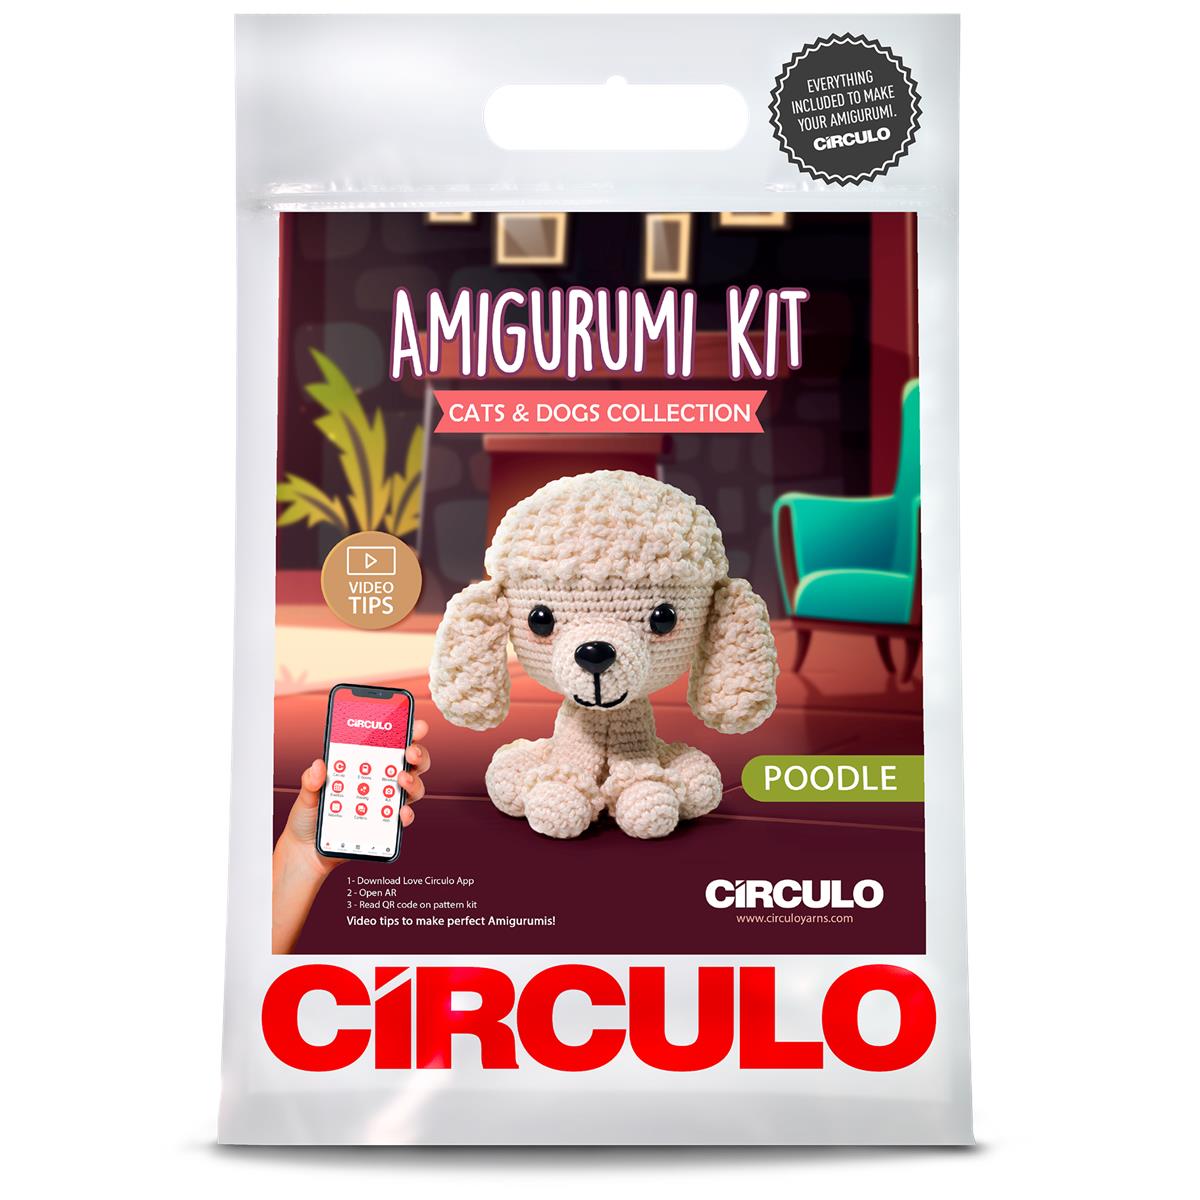 Amigurumi Kits (Cats and Dogs)